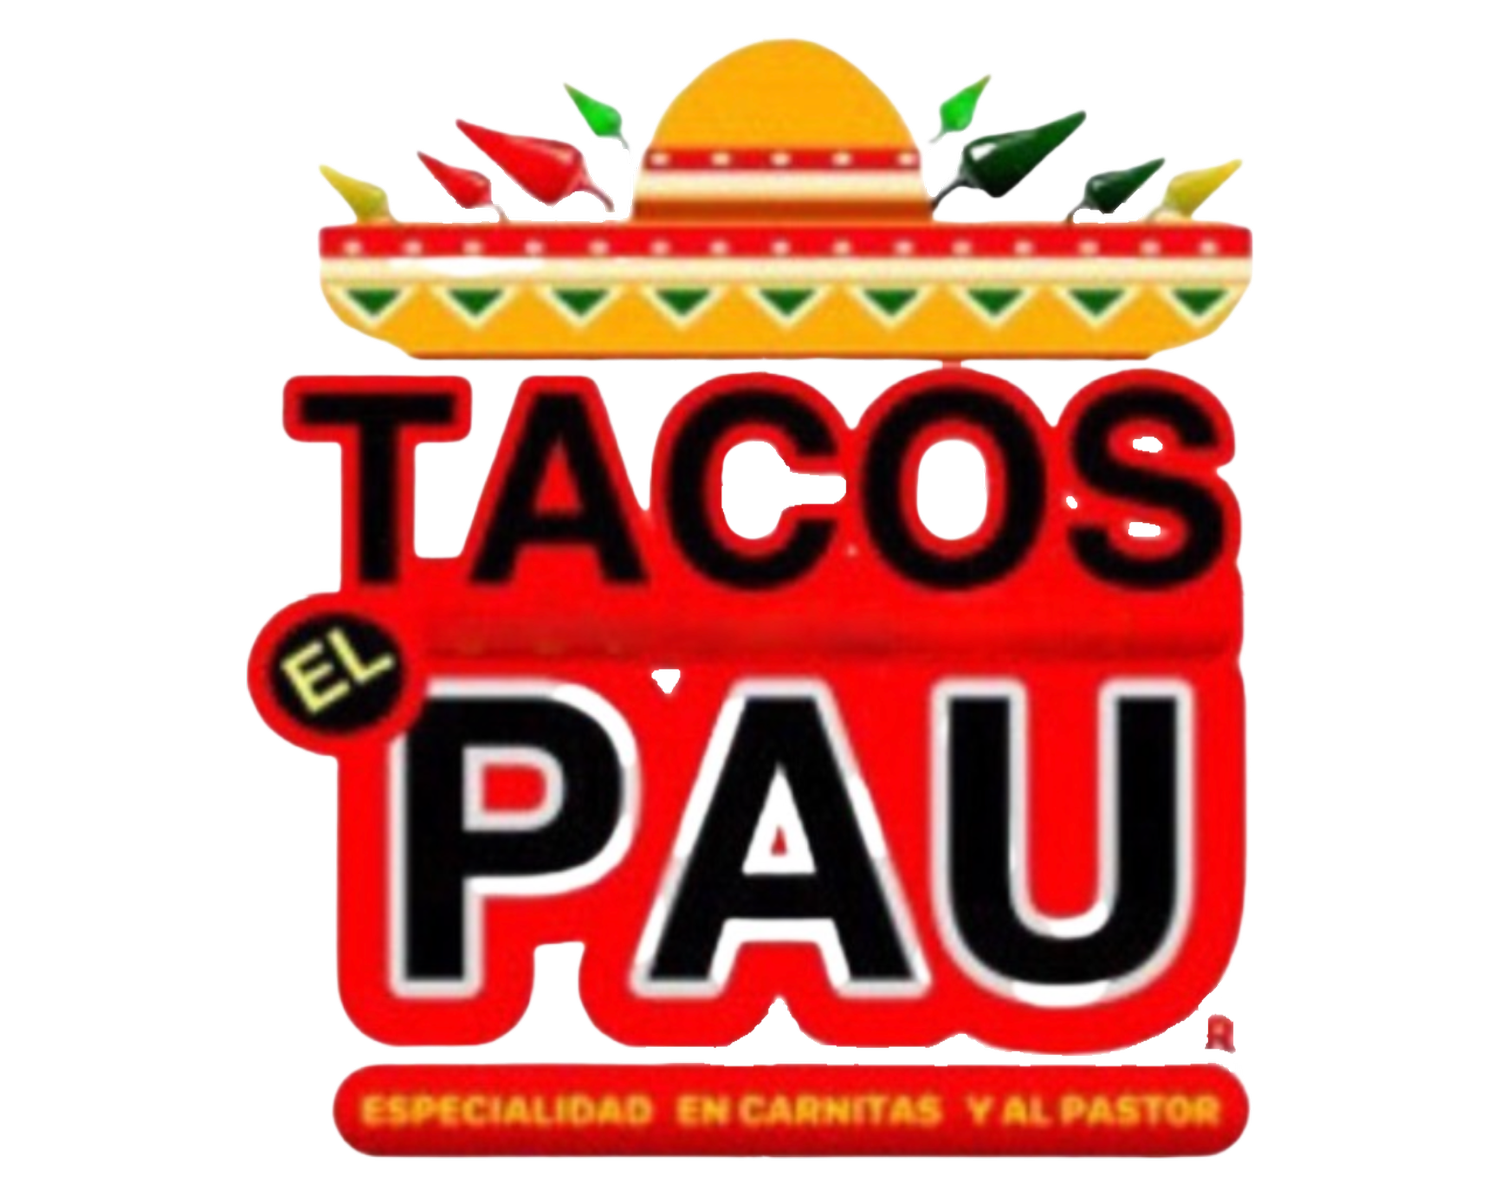 Tacos El Pau